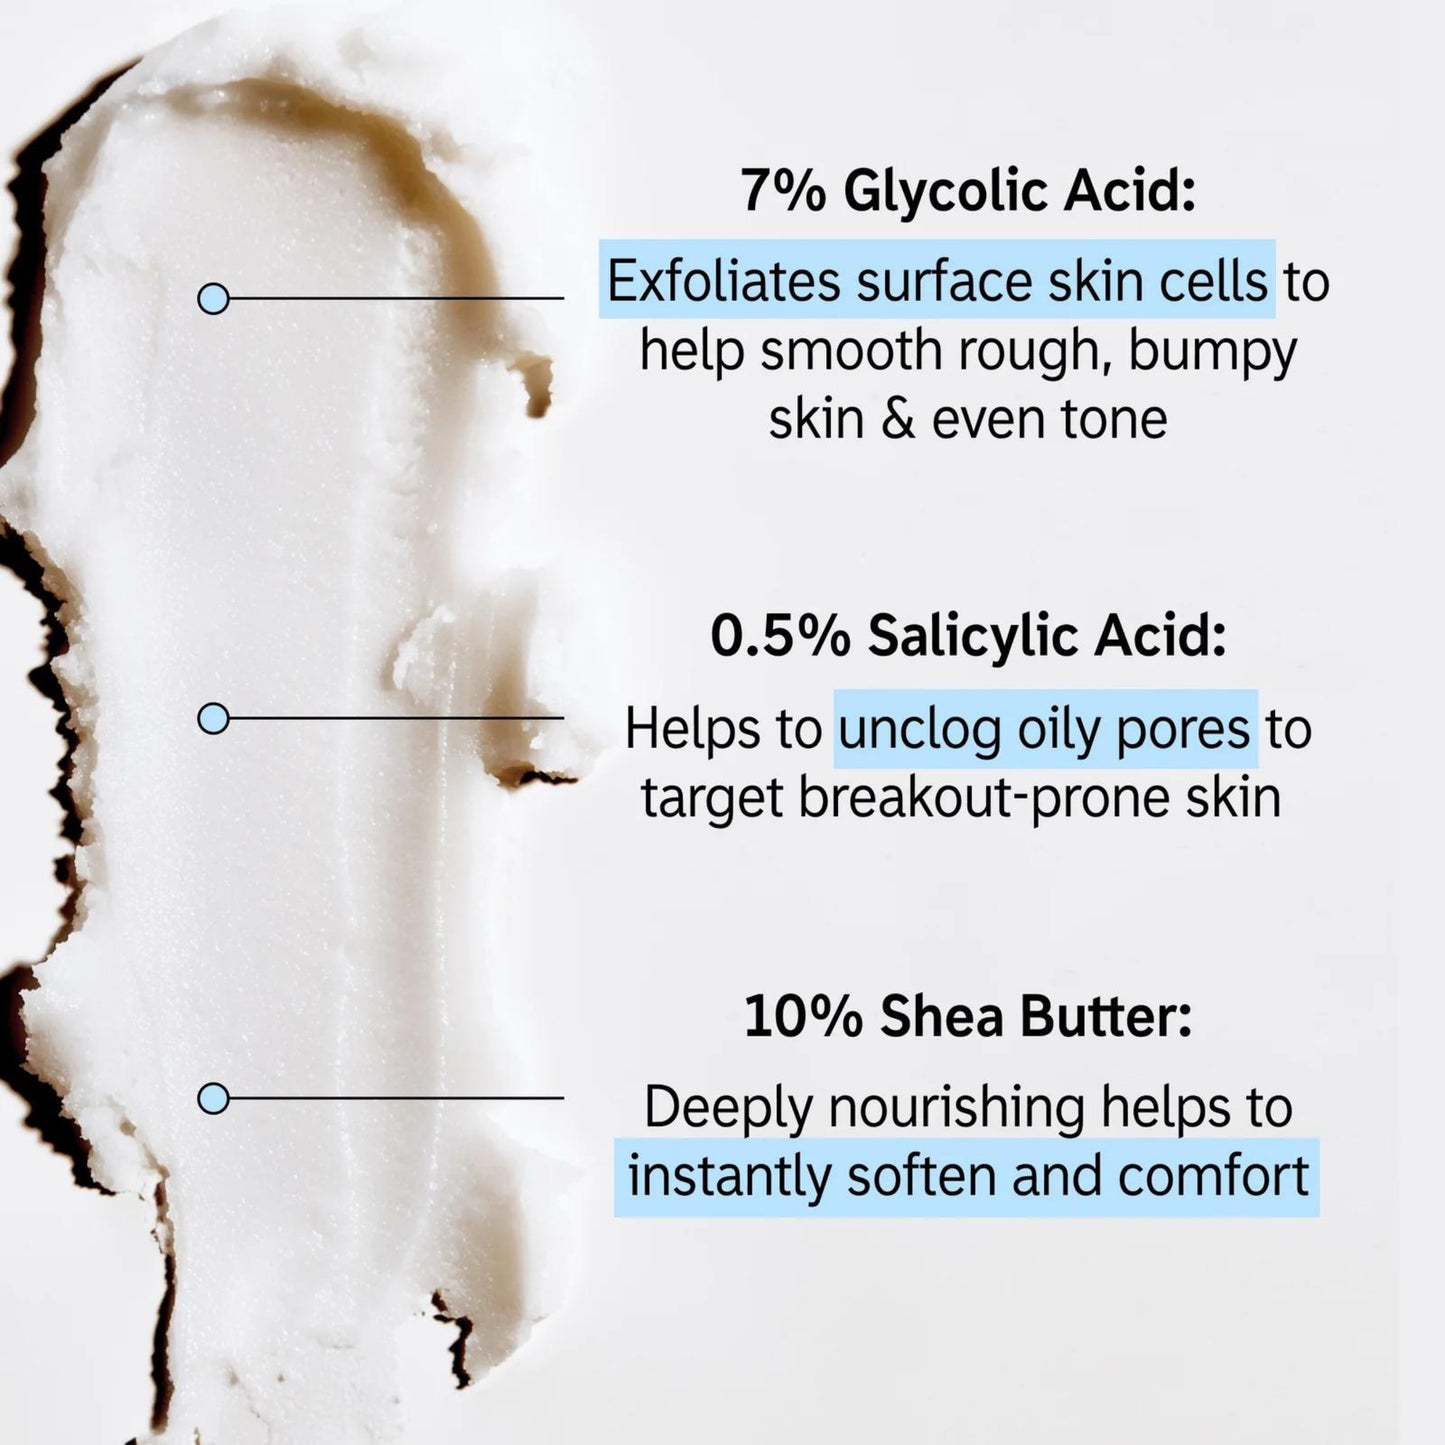 THE INKEY LIST Glycolic Acid Exfoliating Body Stick